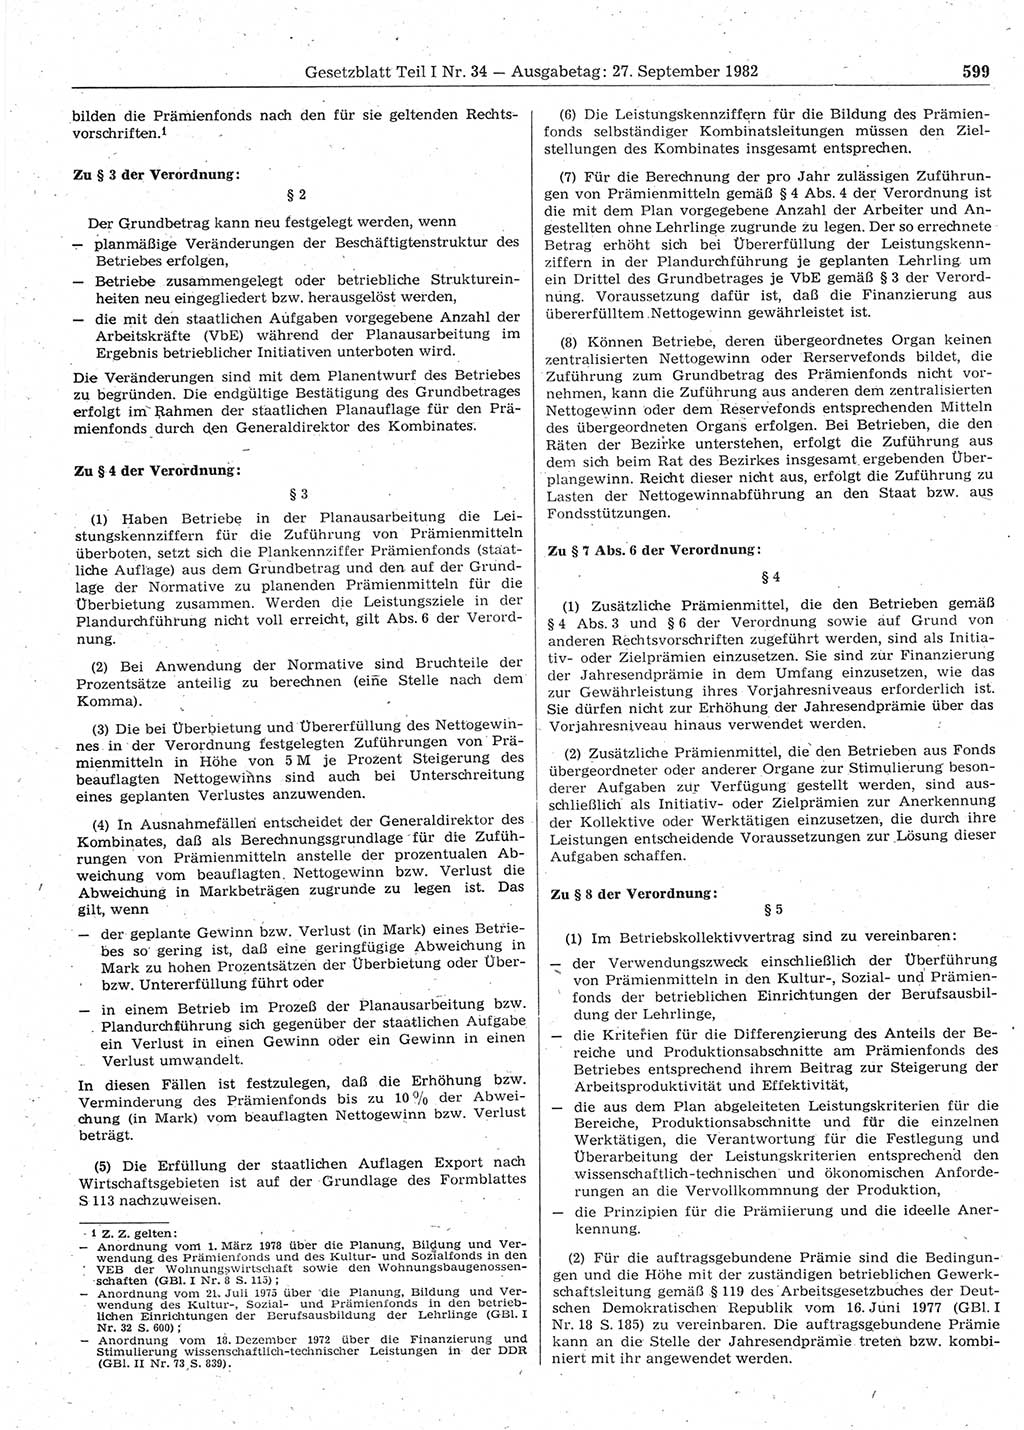 Gesetzblatt (GBl.) der Deutschen Demokratischen Republik (DDR) Teil Ⅰ 1982, Seite 599 (GBl. DDR Ⅰ 1982, S. 599)